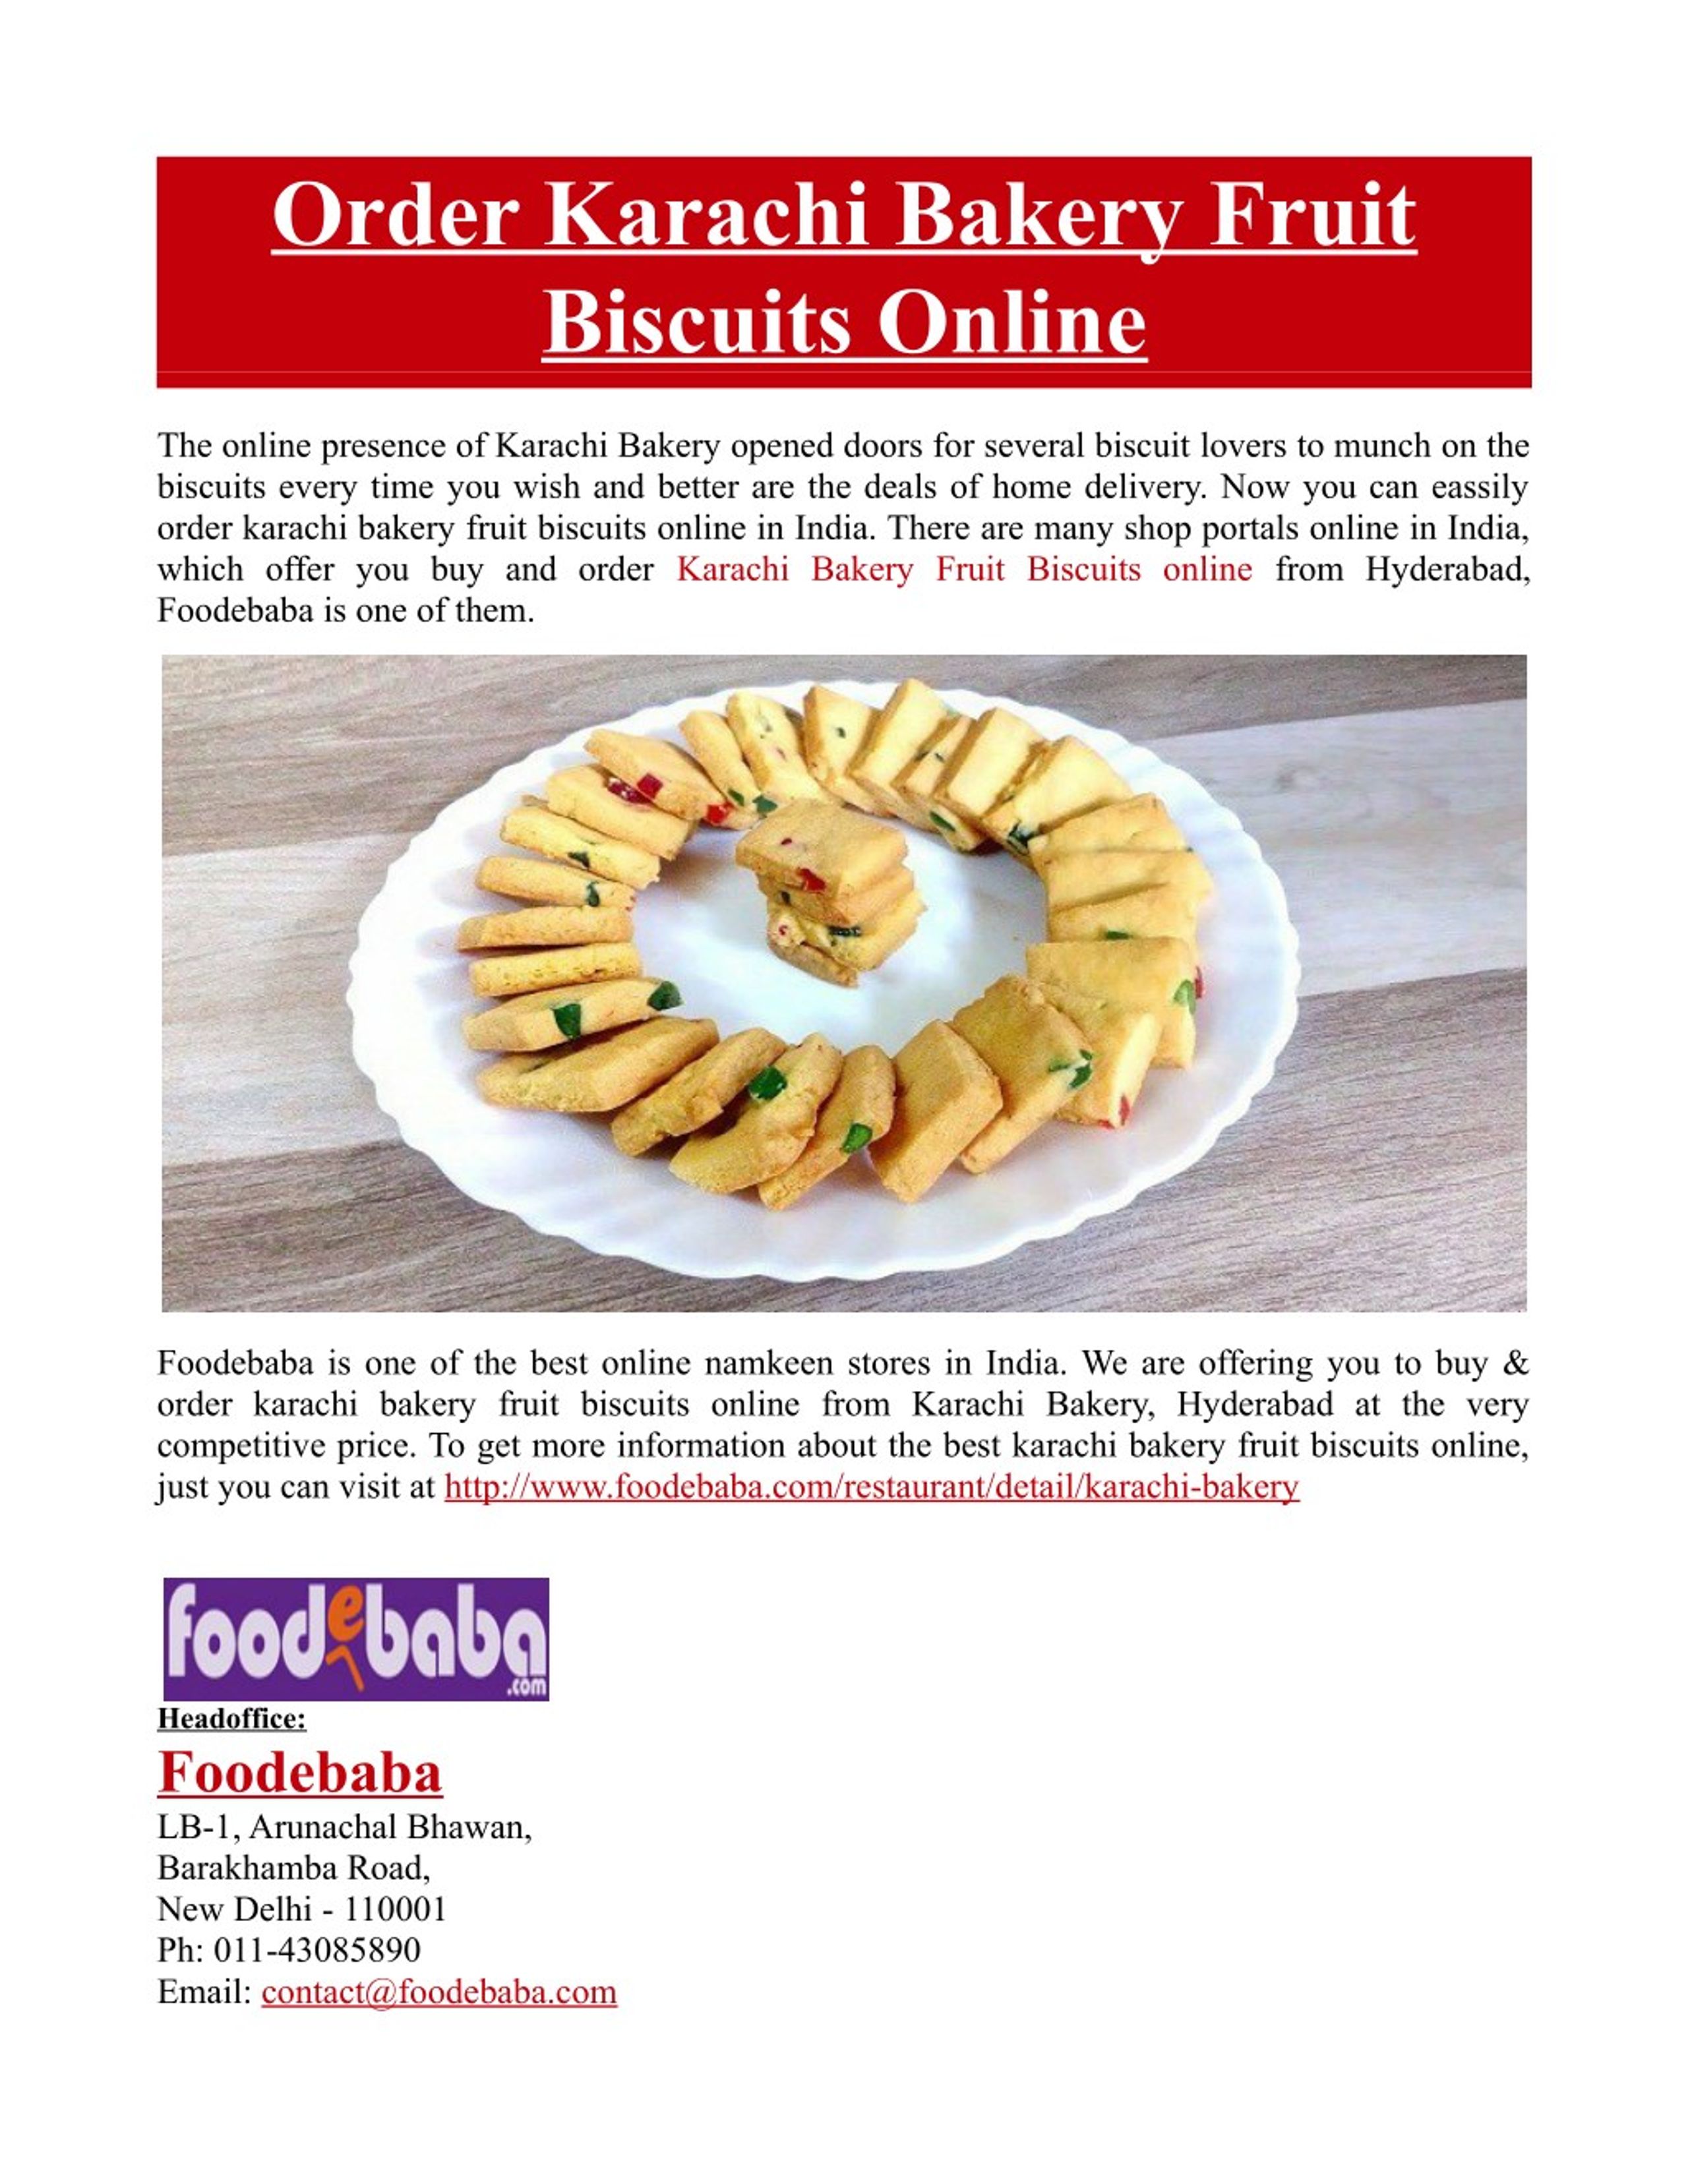 order biscuits online